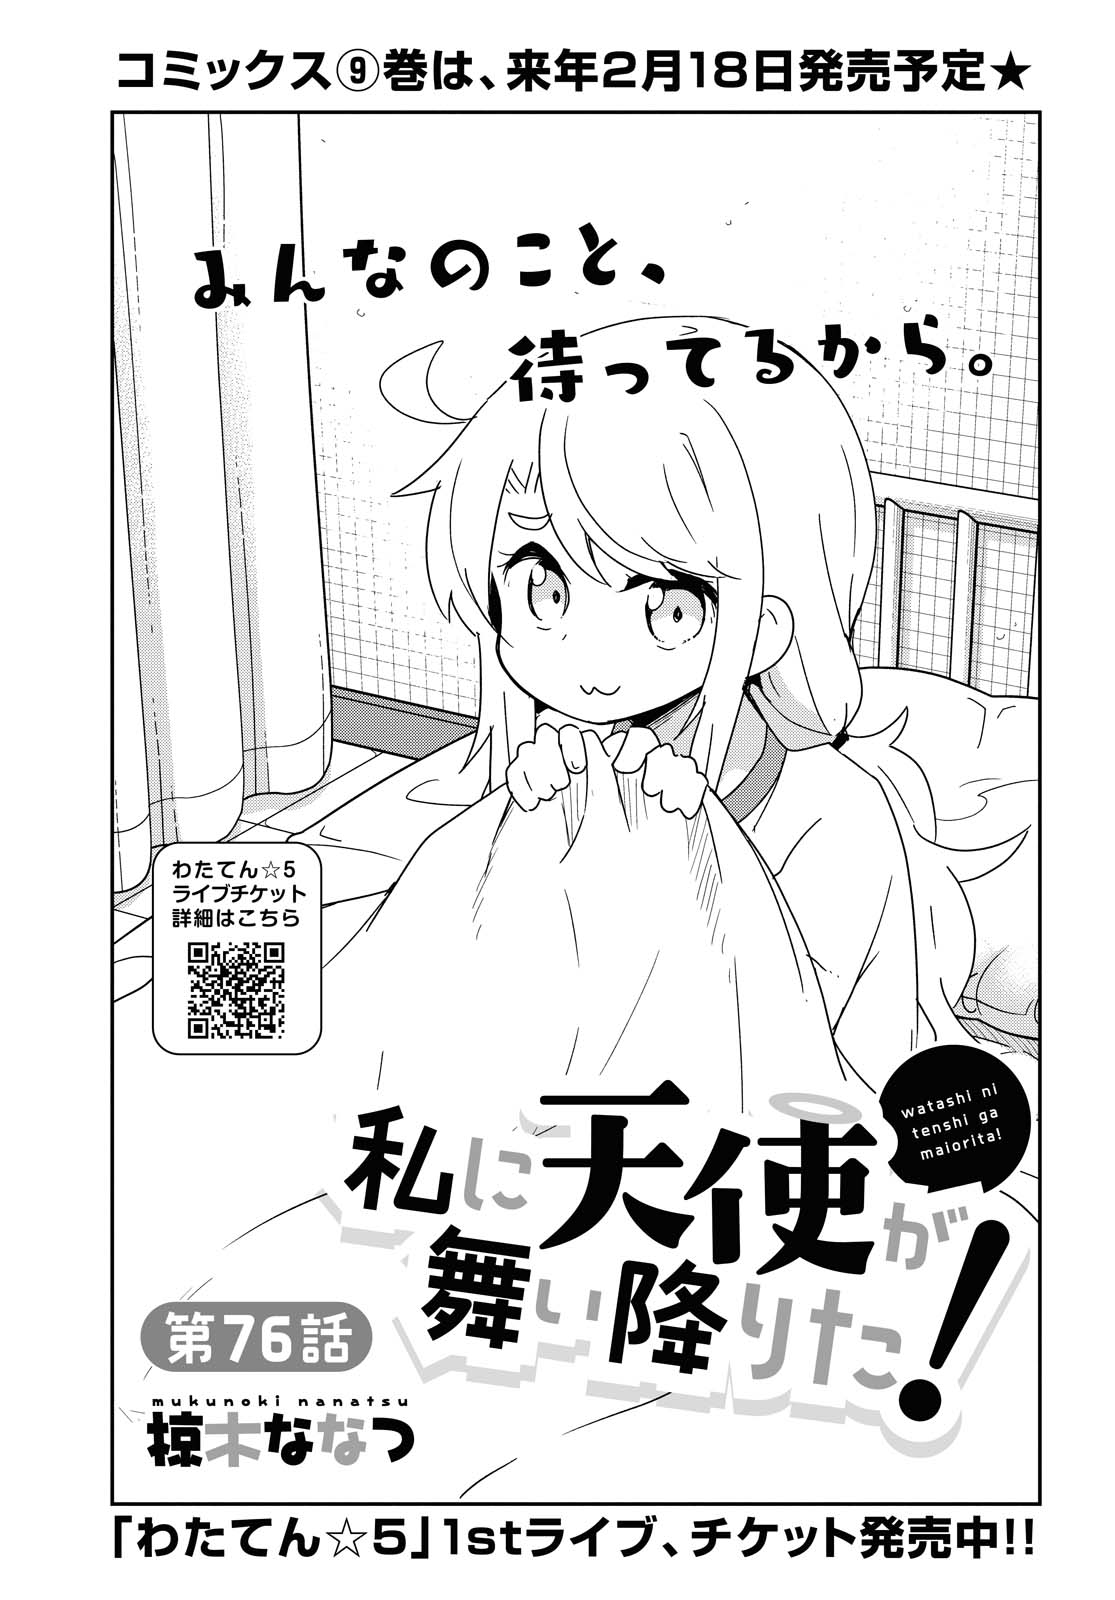 Watashi ni Tenshi ga Maiorita! - Chapter 76 - Page 1